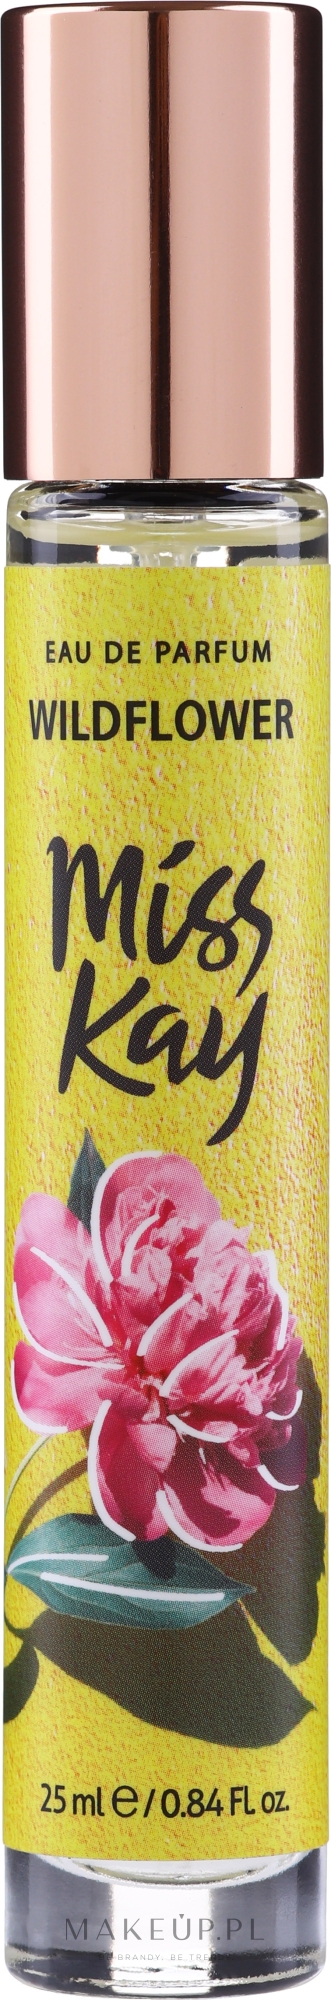 miss kay wildflower